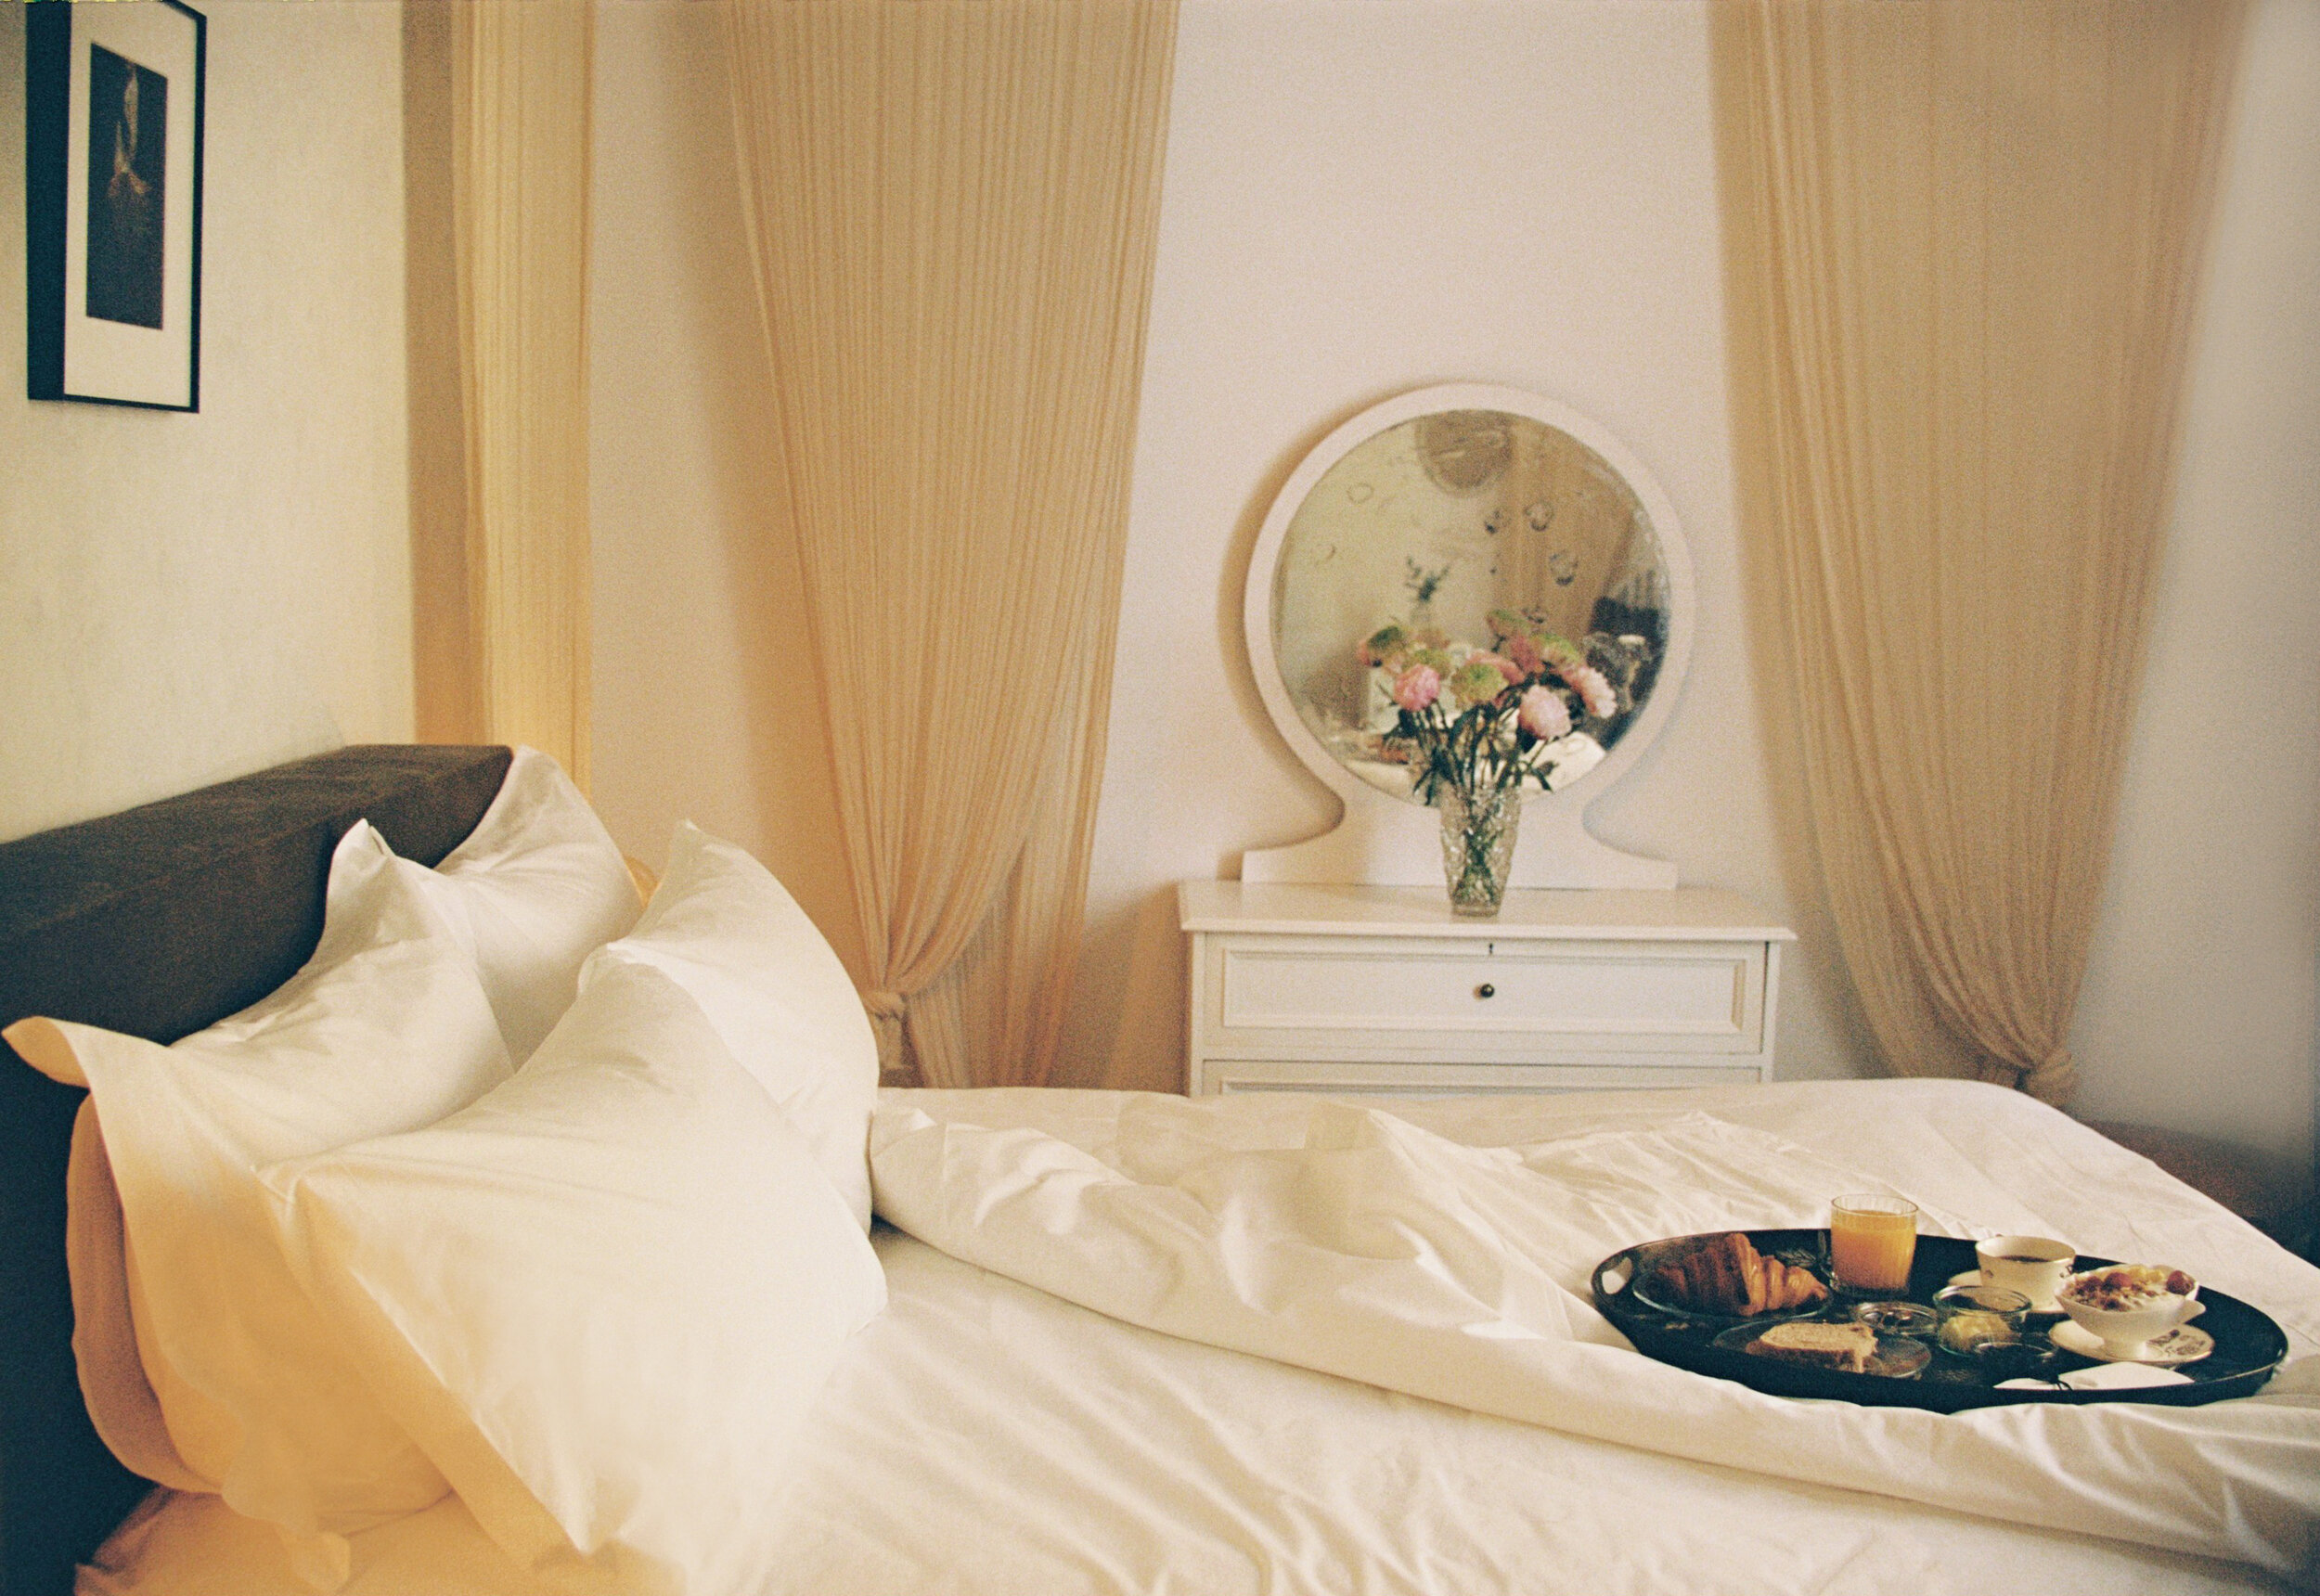 Hotel-Weekend-Barefoot-Luxury-Shila-Room-Breakfast-Artist Atelier_Pia Riverola.jpg